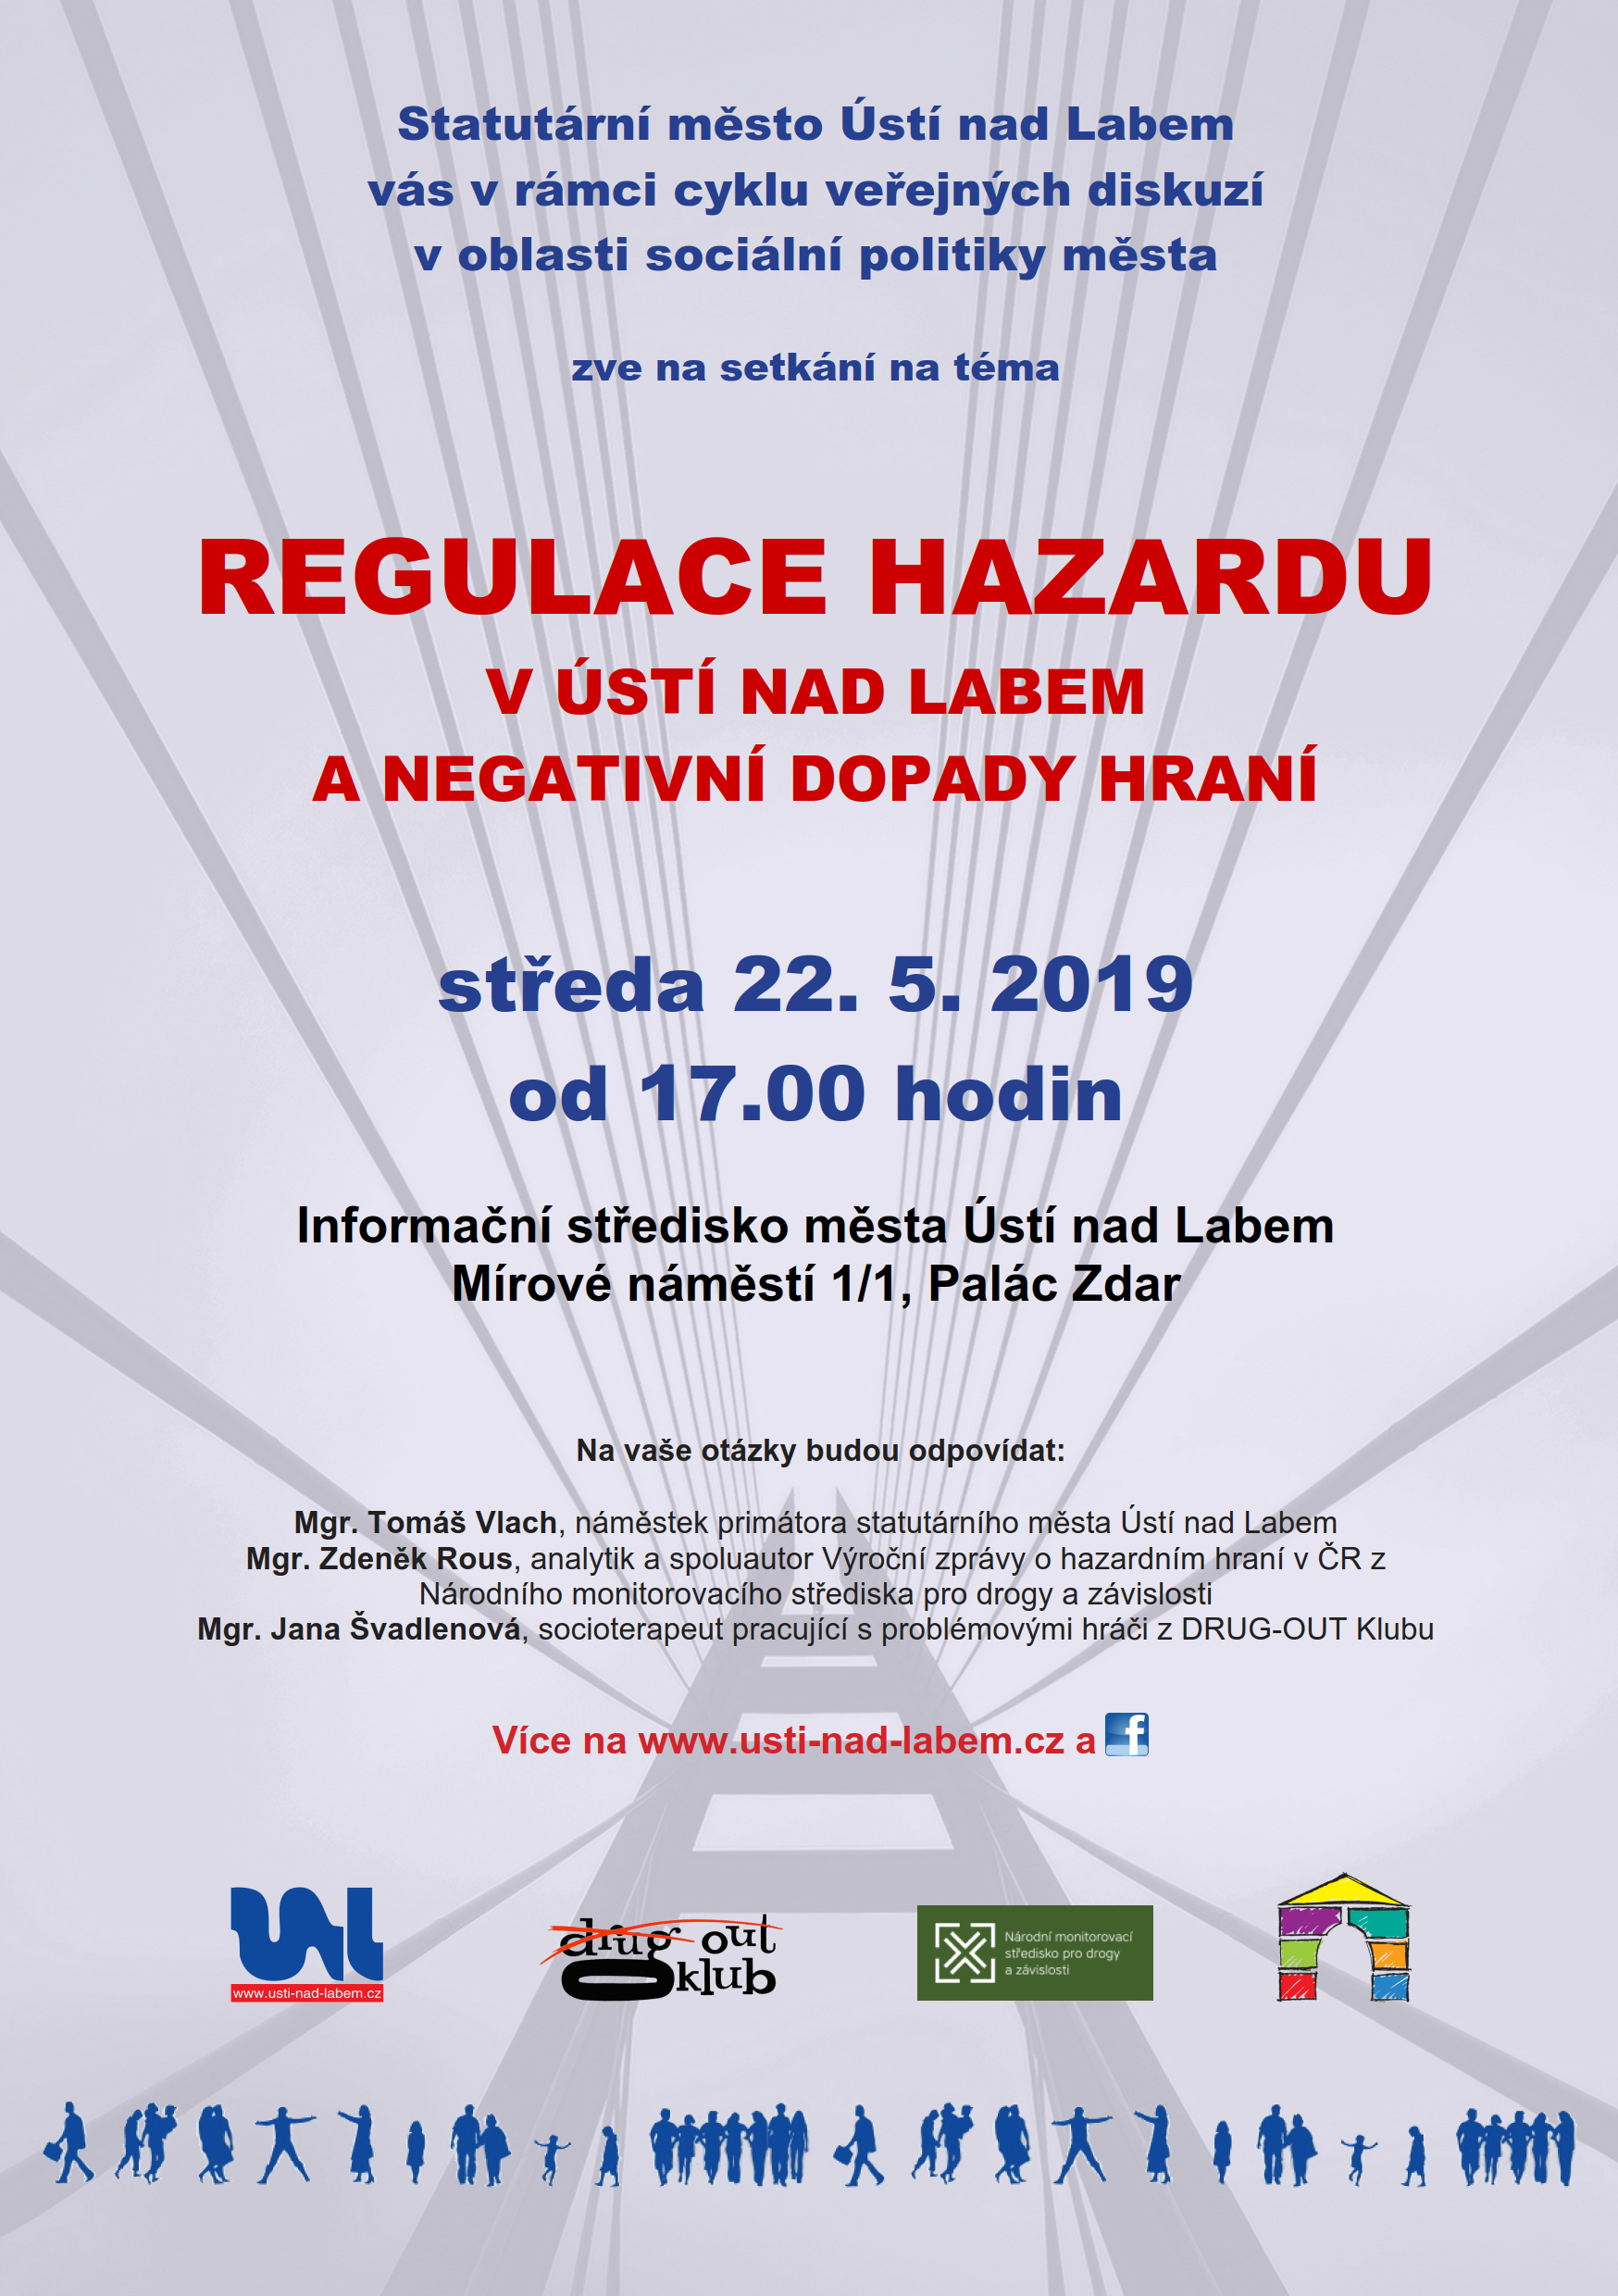 Pozvánka na veřejnou diskusi na téma Regulace hazardu v Ústí nad Labem